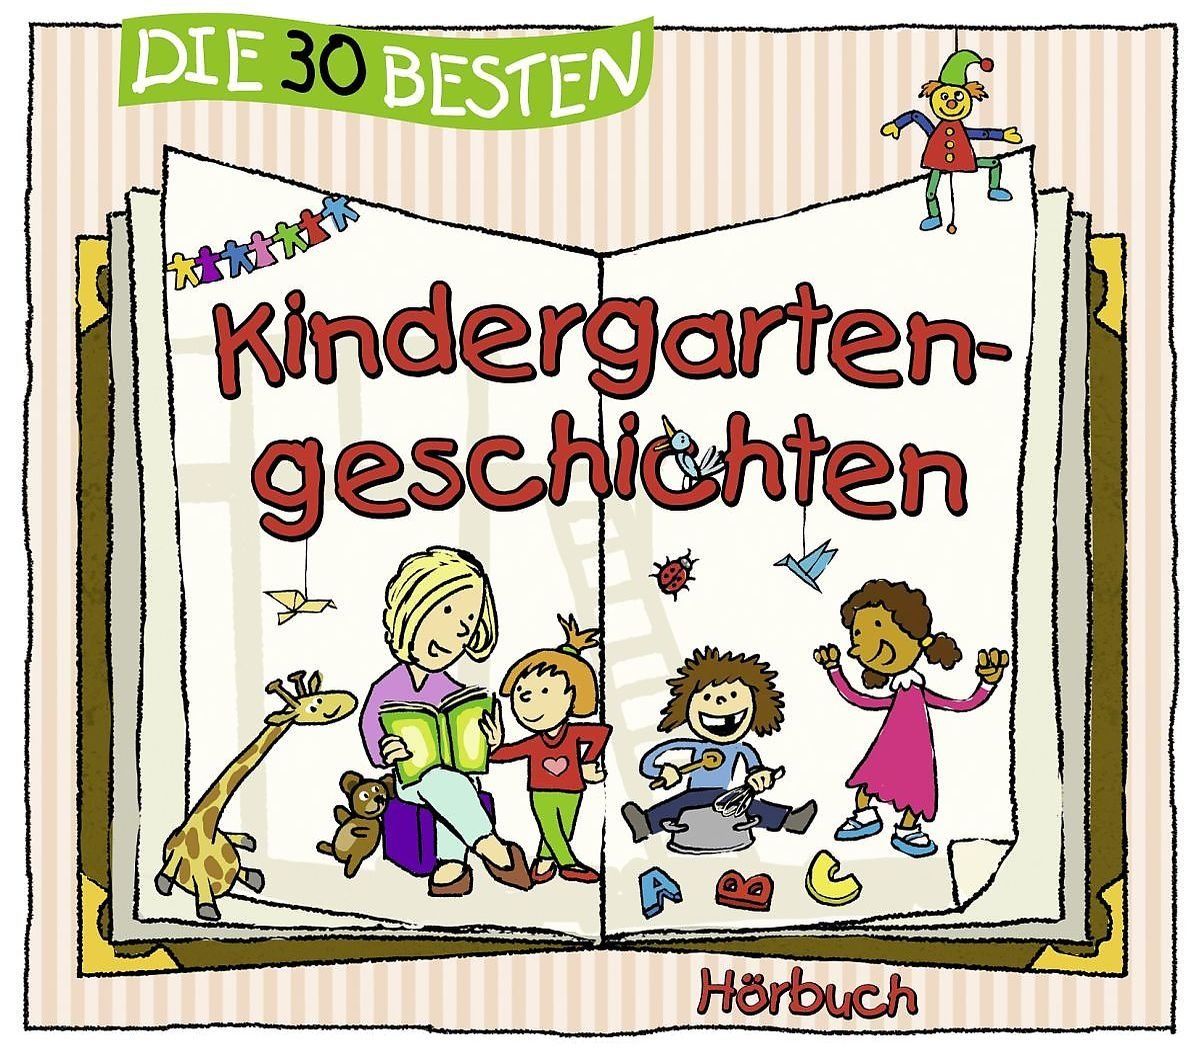 Die 30 besten Kindergartengeschichten 3CD (Hörbuch) -  Neu & in Folie!